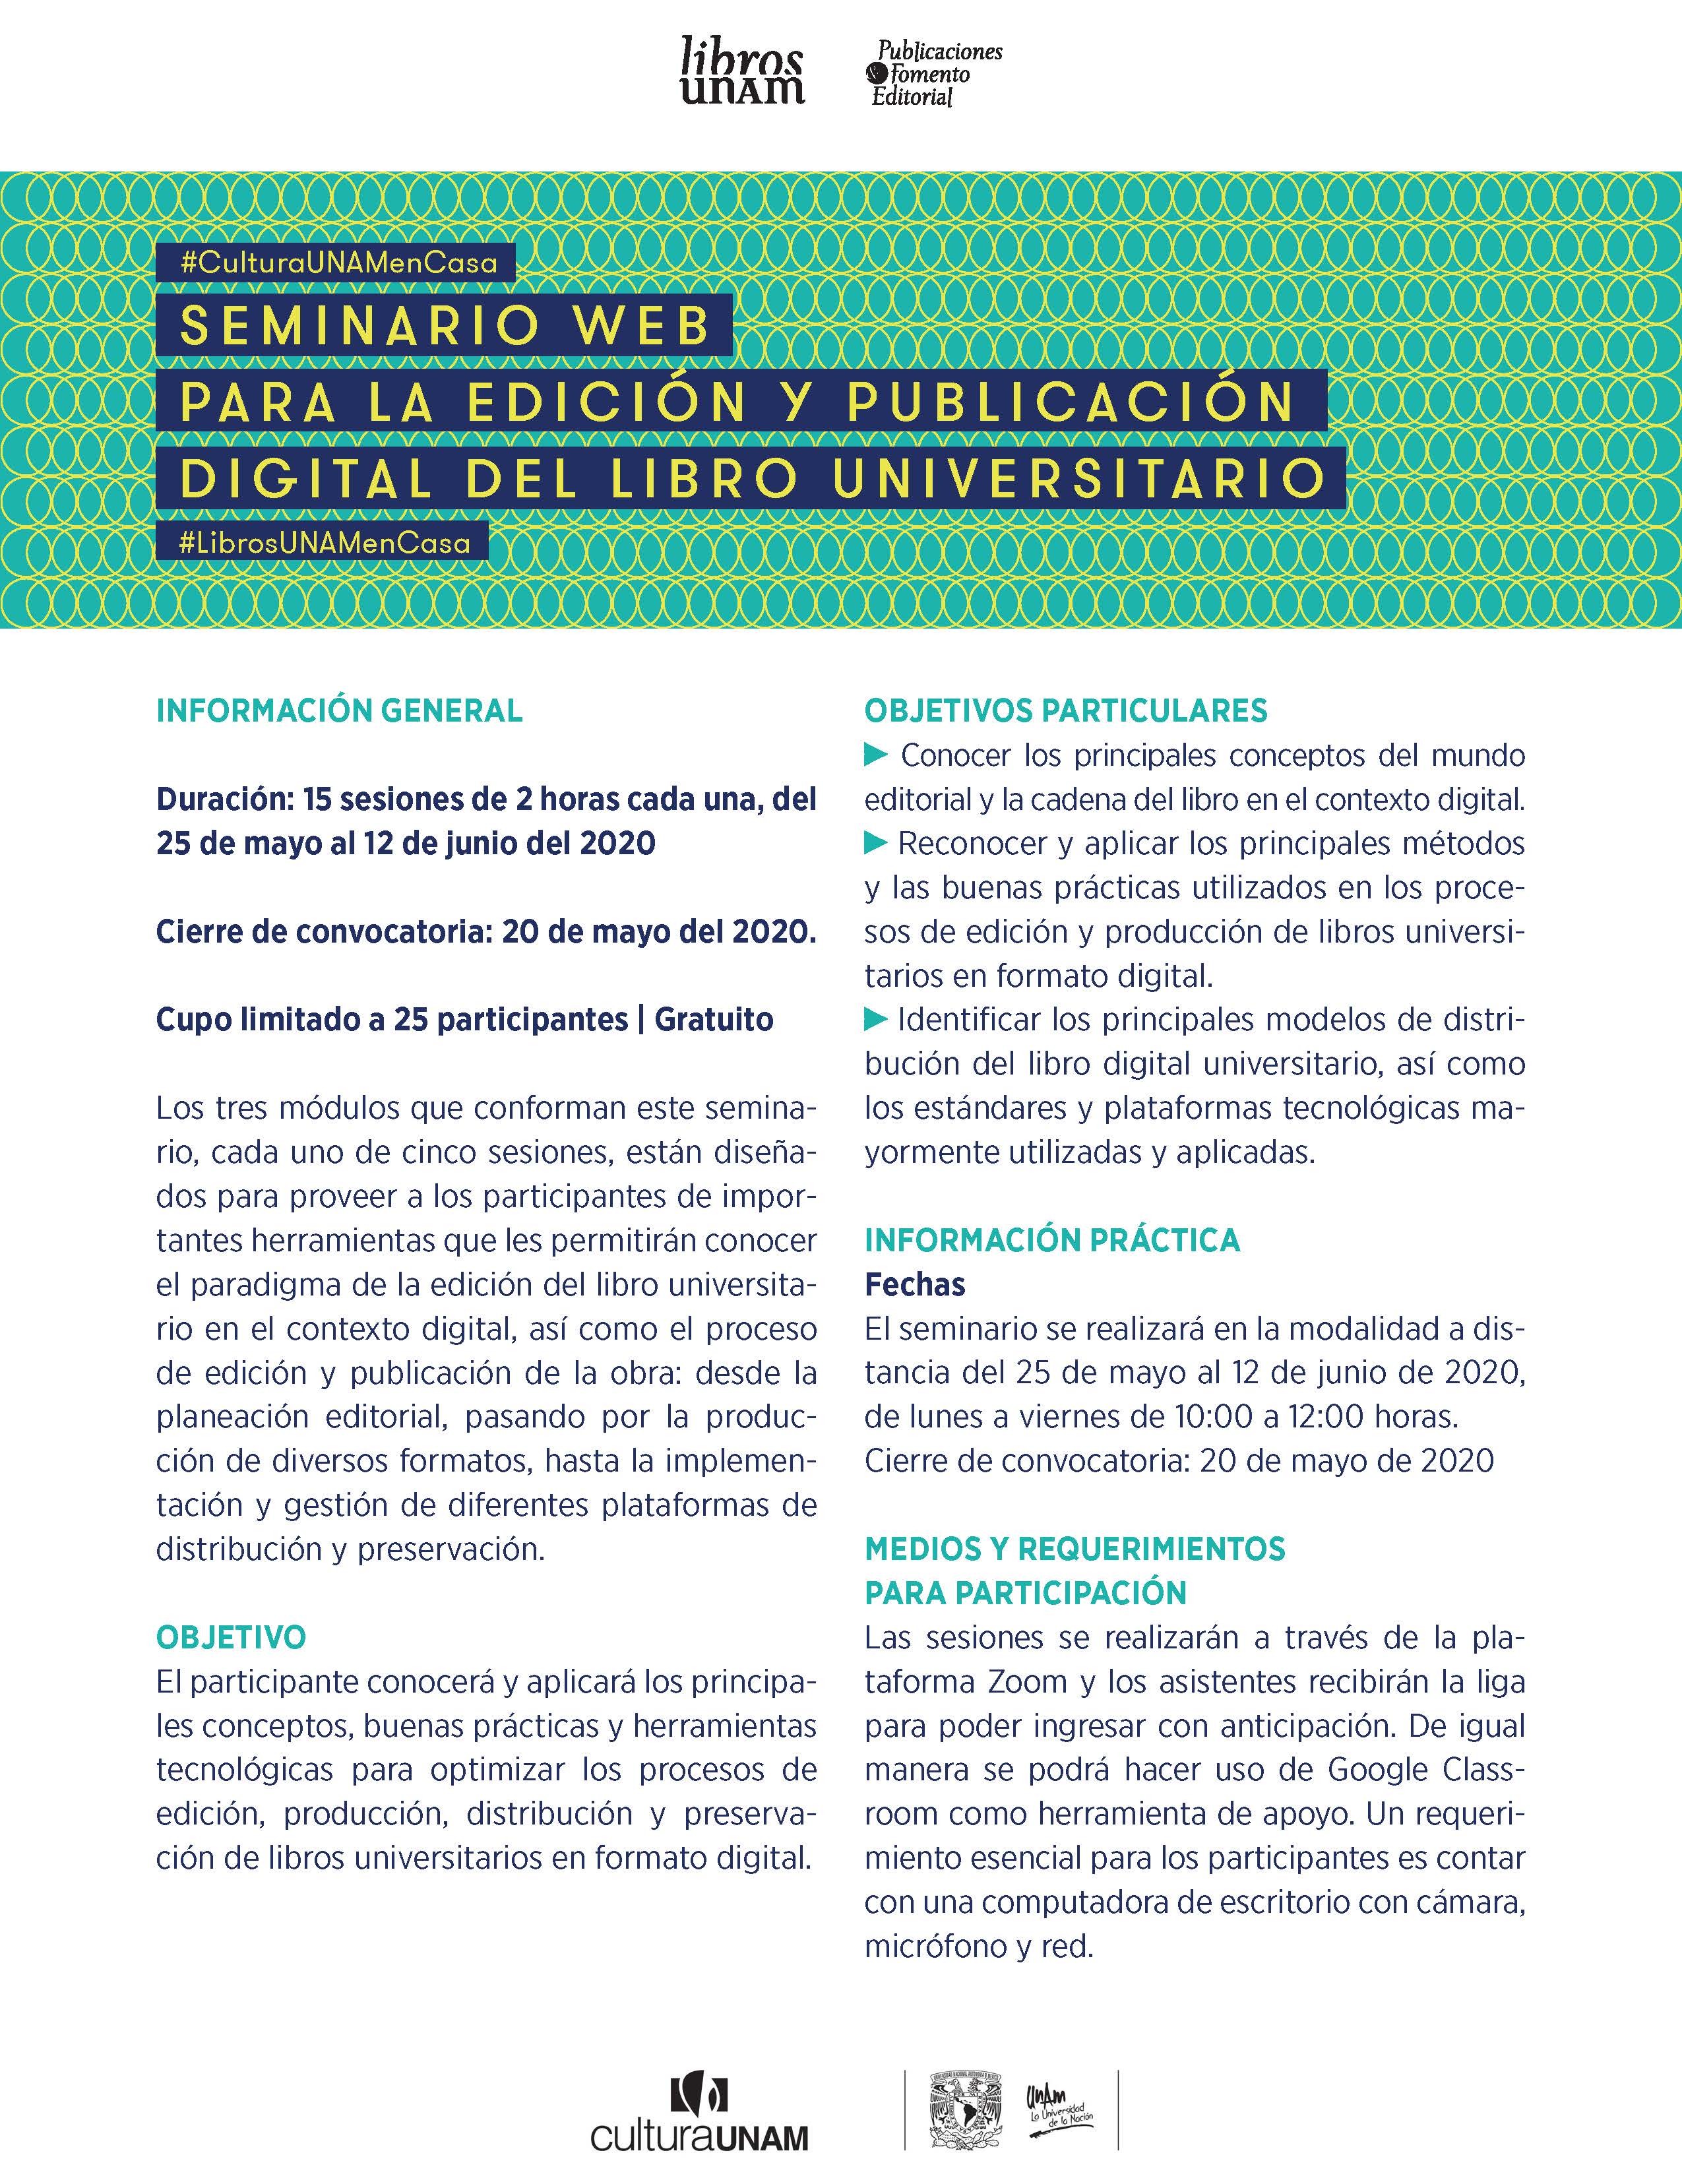 Seminario WEB para la edición y publicación digital del libro universitario